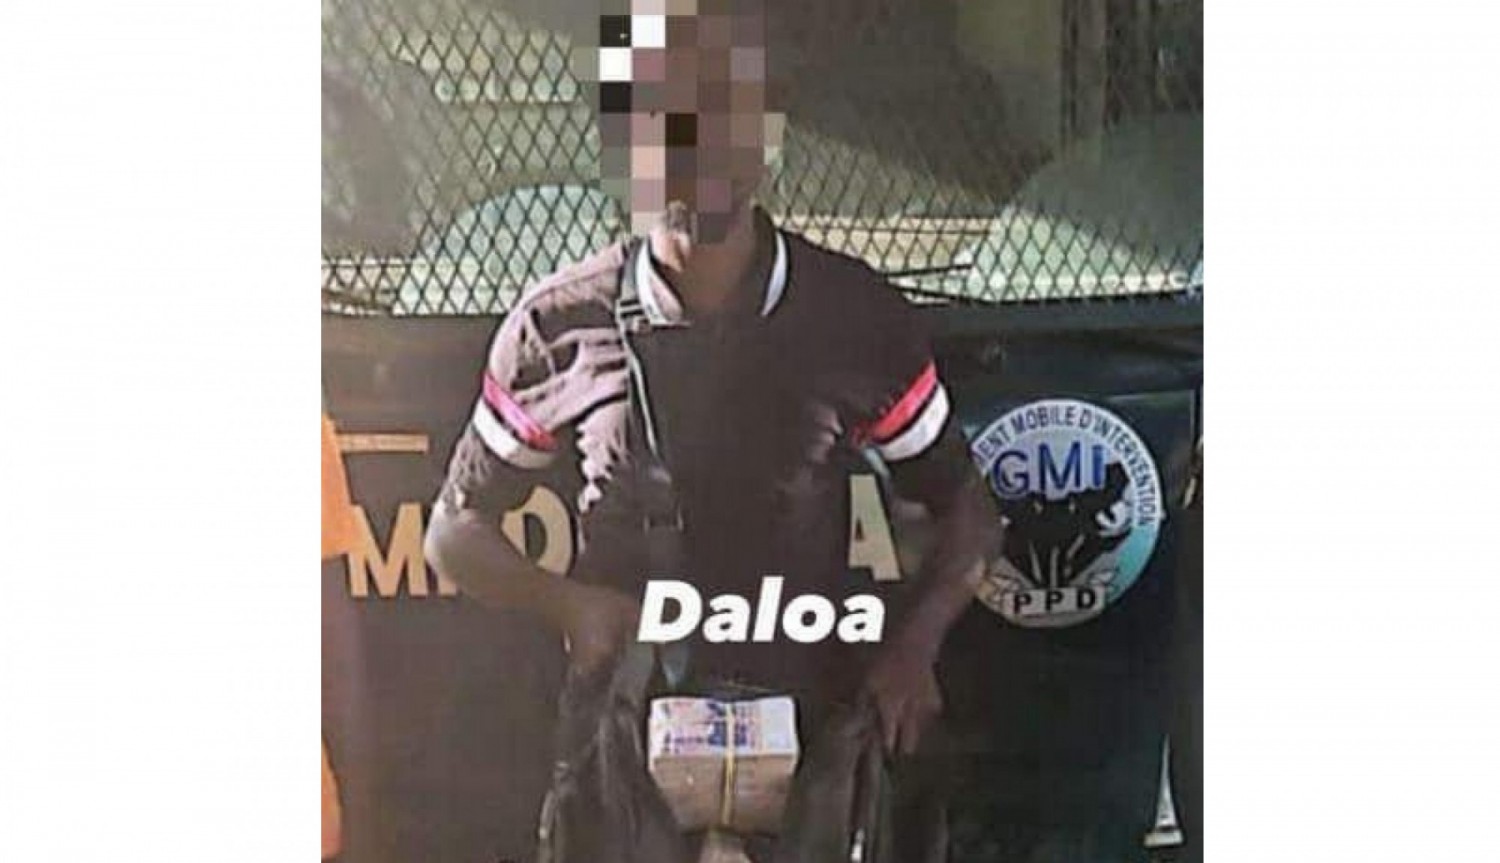 Côte d'Ivoire : Daloa, découverte choc, interception d'un technicien monétique avec 100 millions de francs CFA